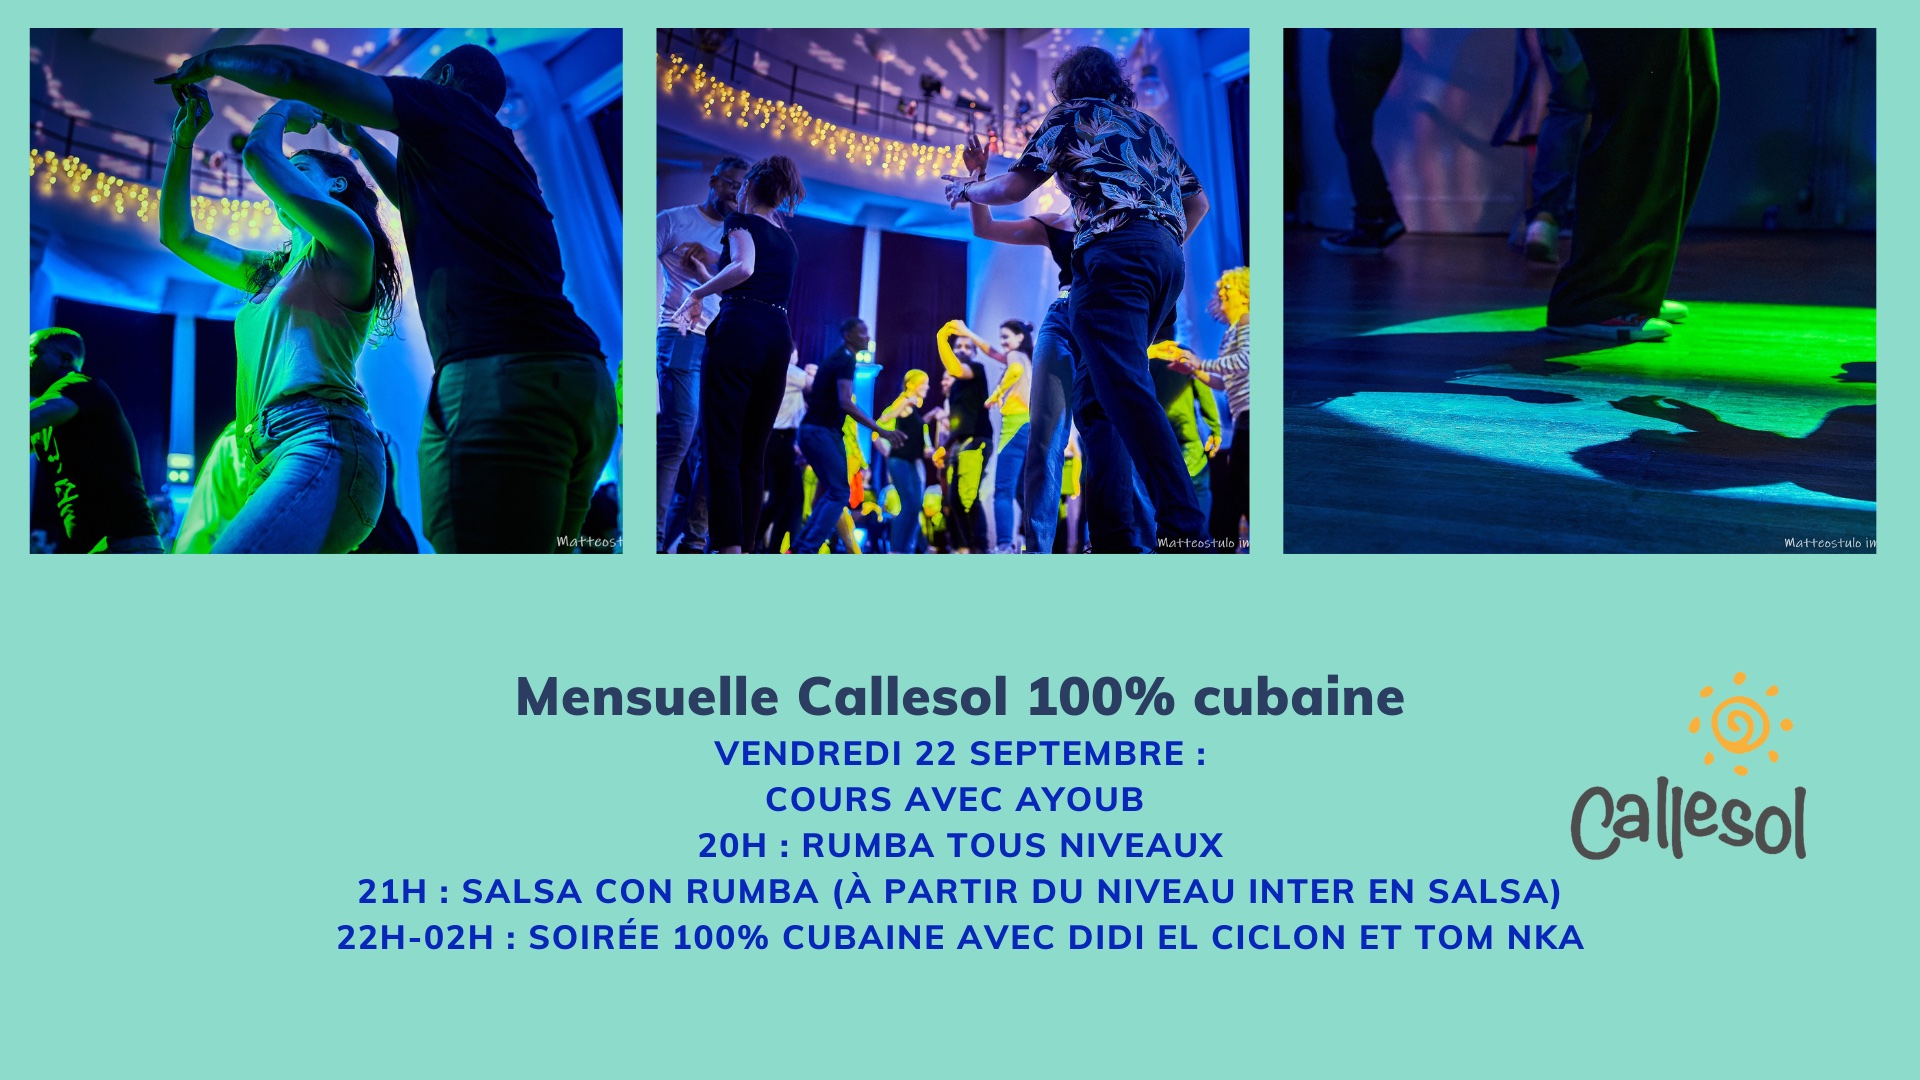 Soirée mensuelle Callesol 100% cubaine le vendredi 22 septembre